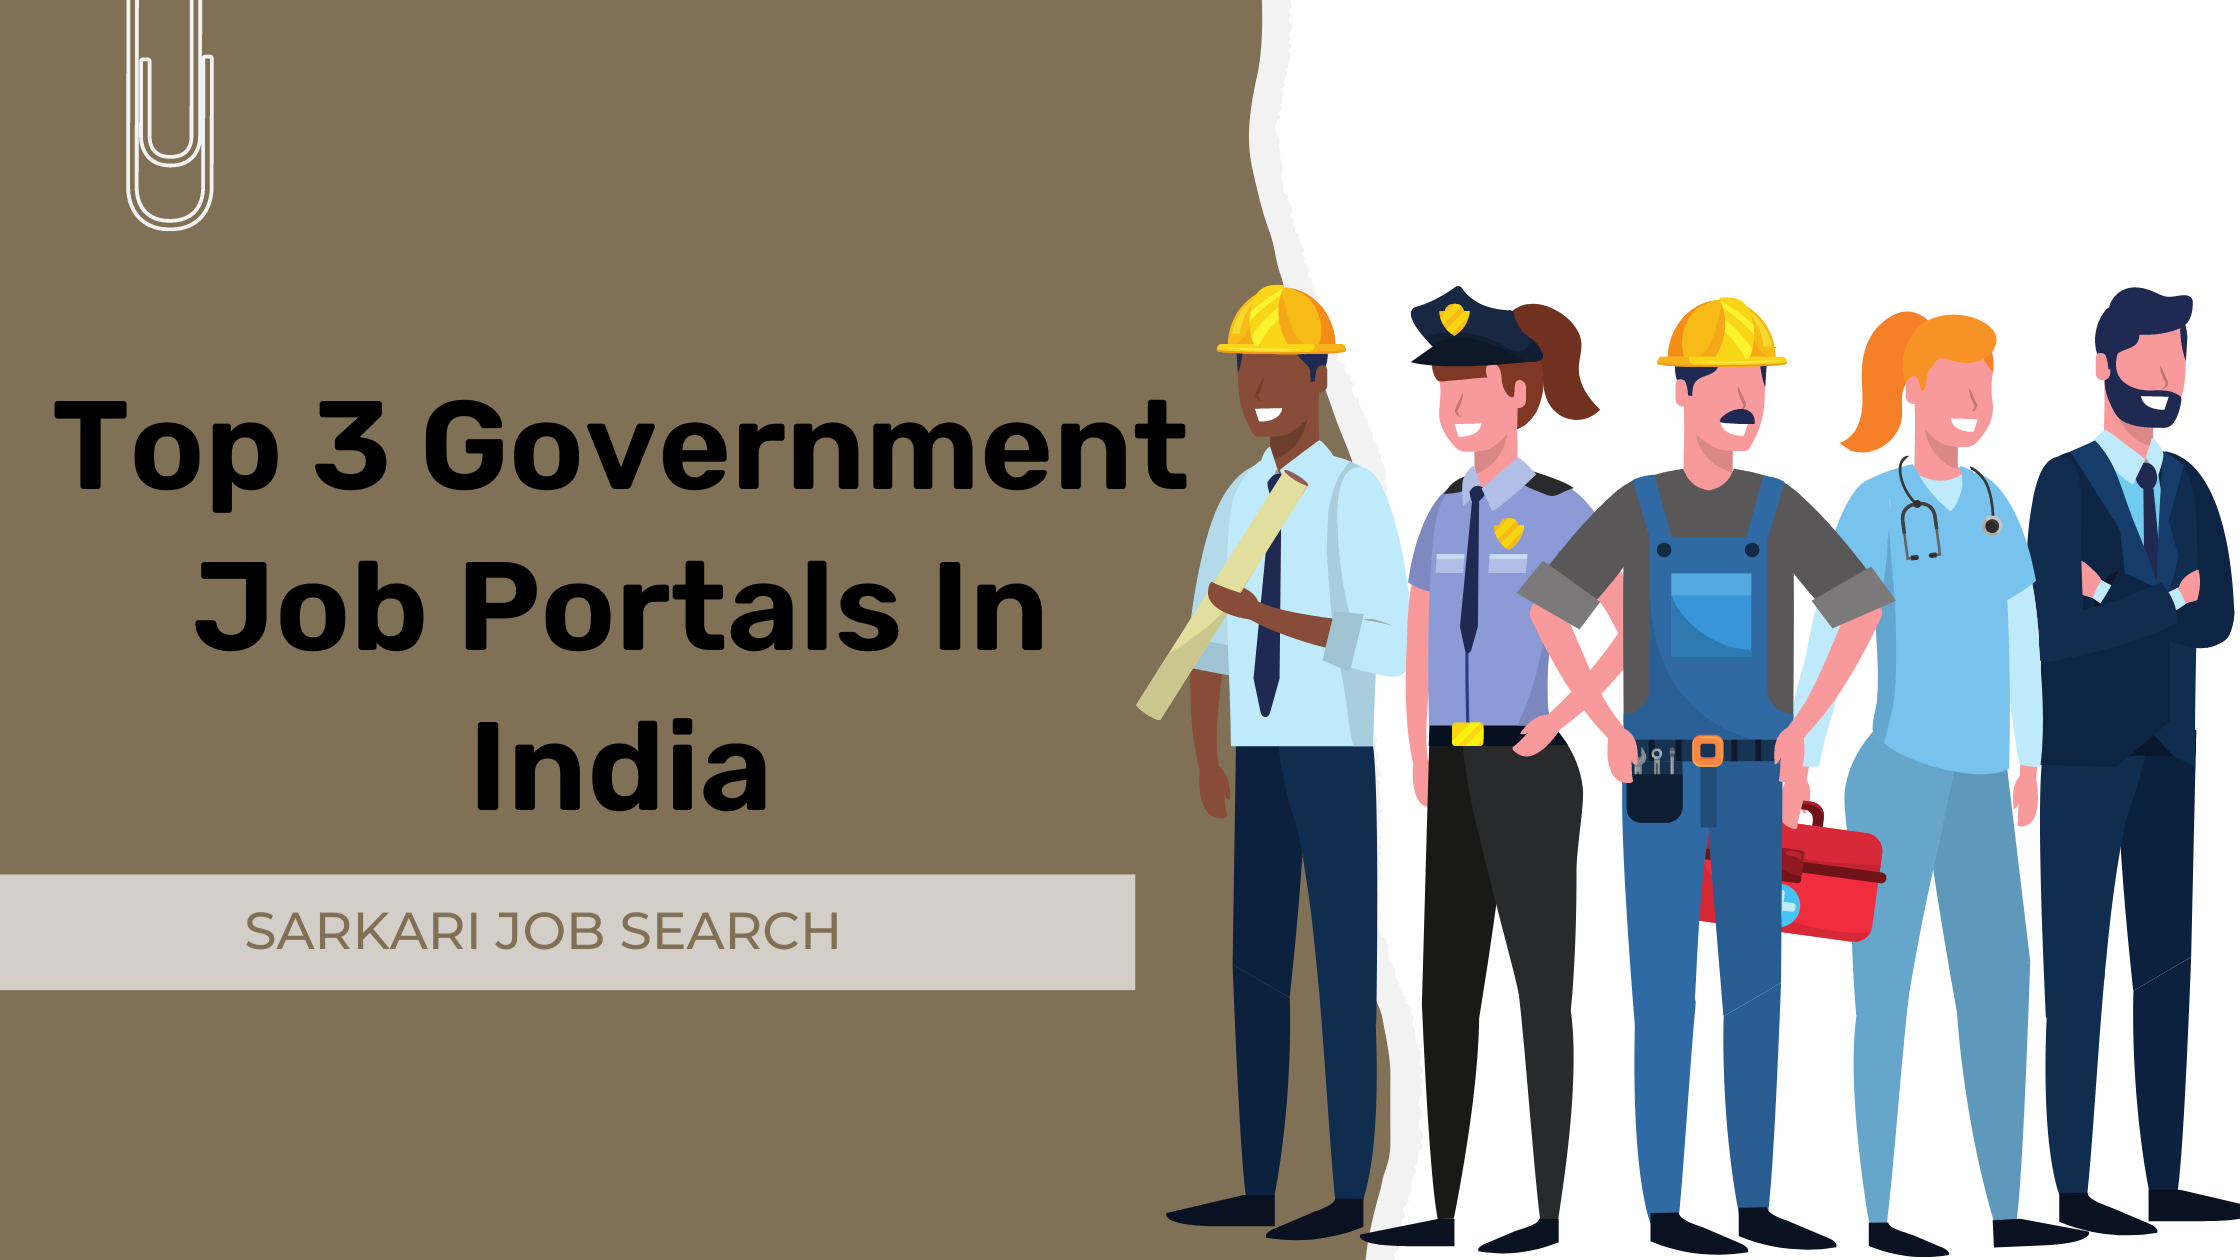 Top 3 Government Job Portals In India